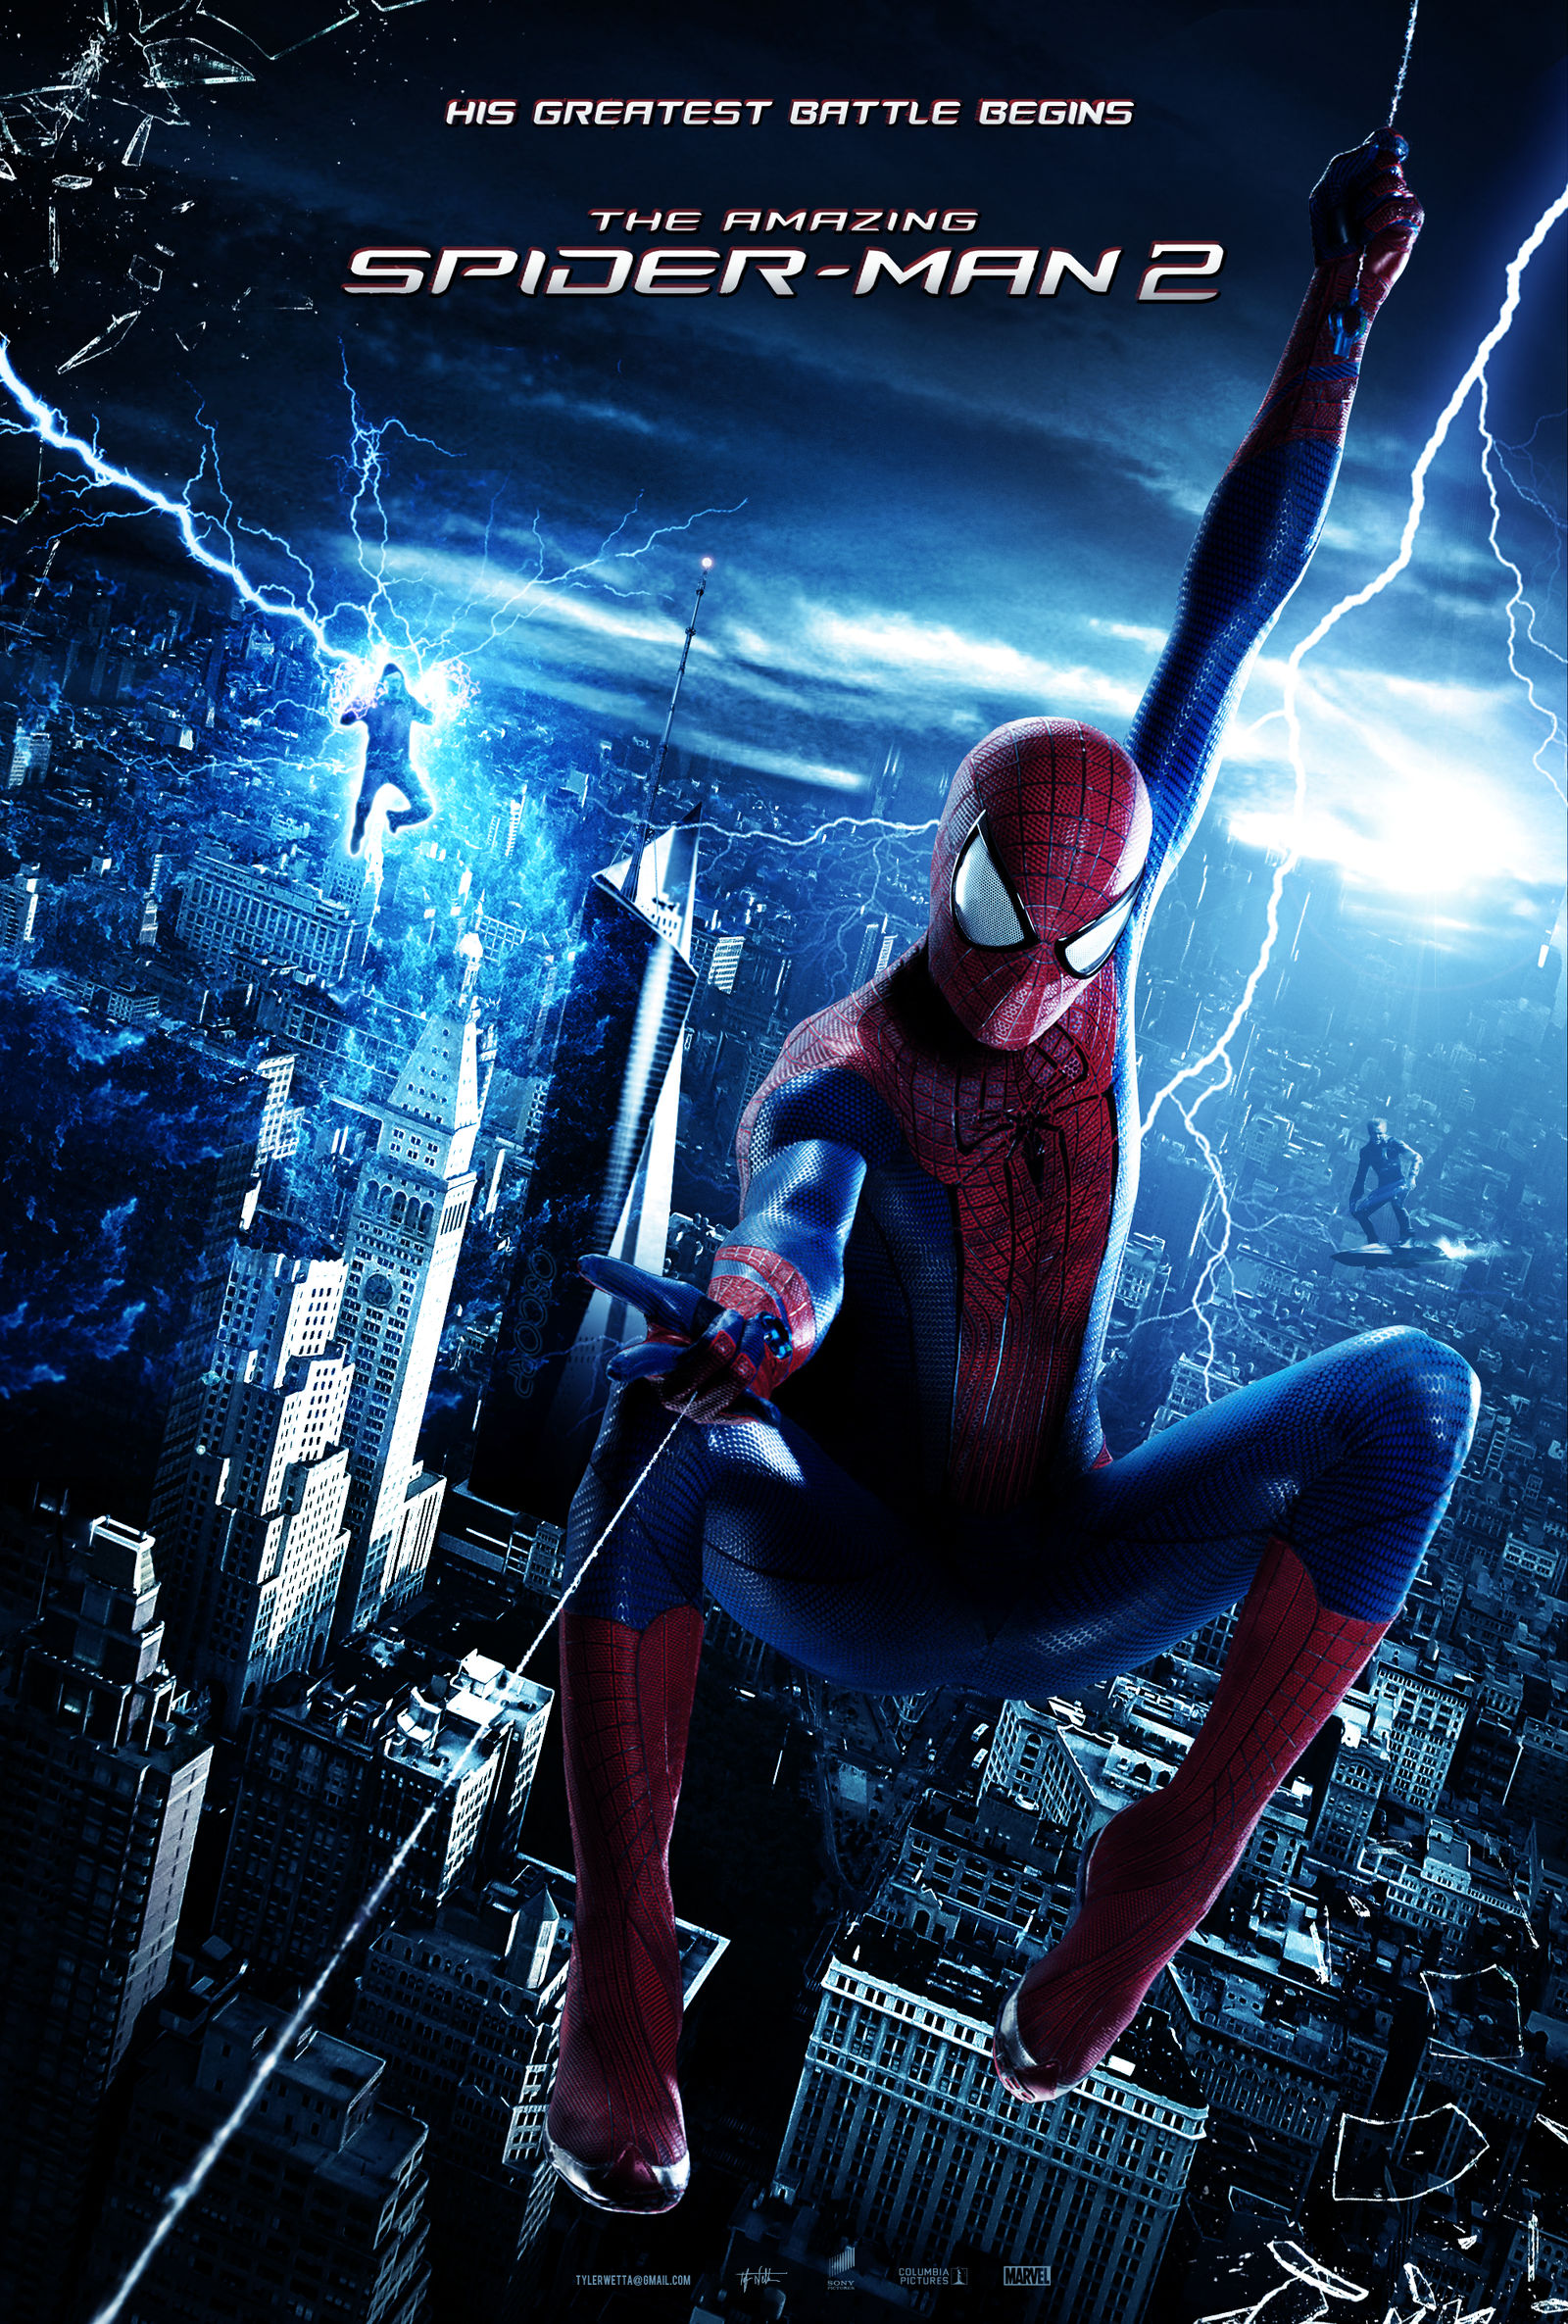 The Amazing Spider-Man 2 Poster by tyler-wetta on DeviantArt